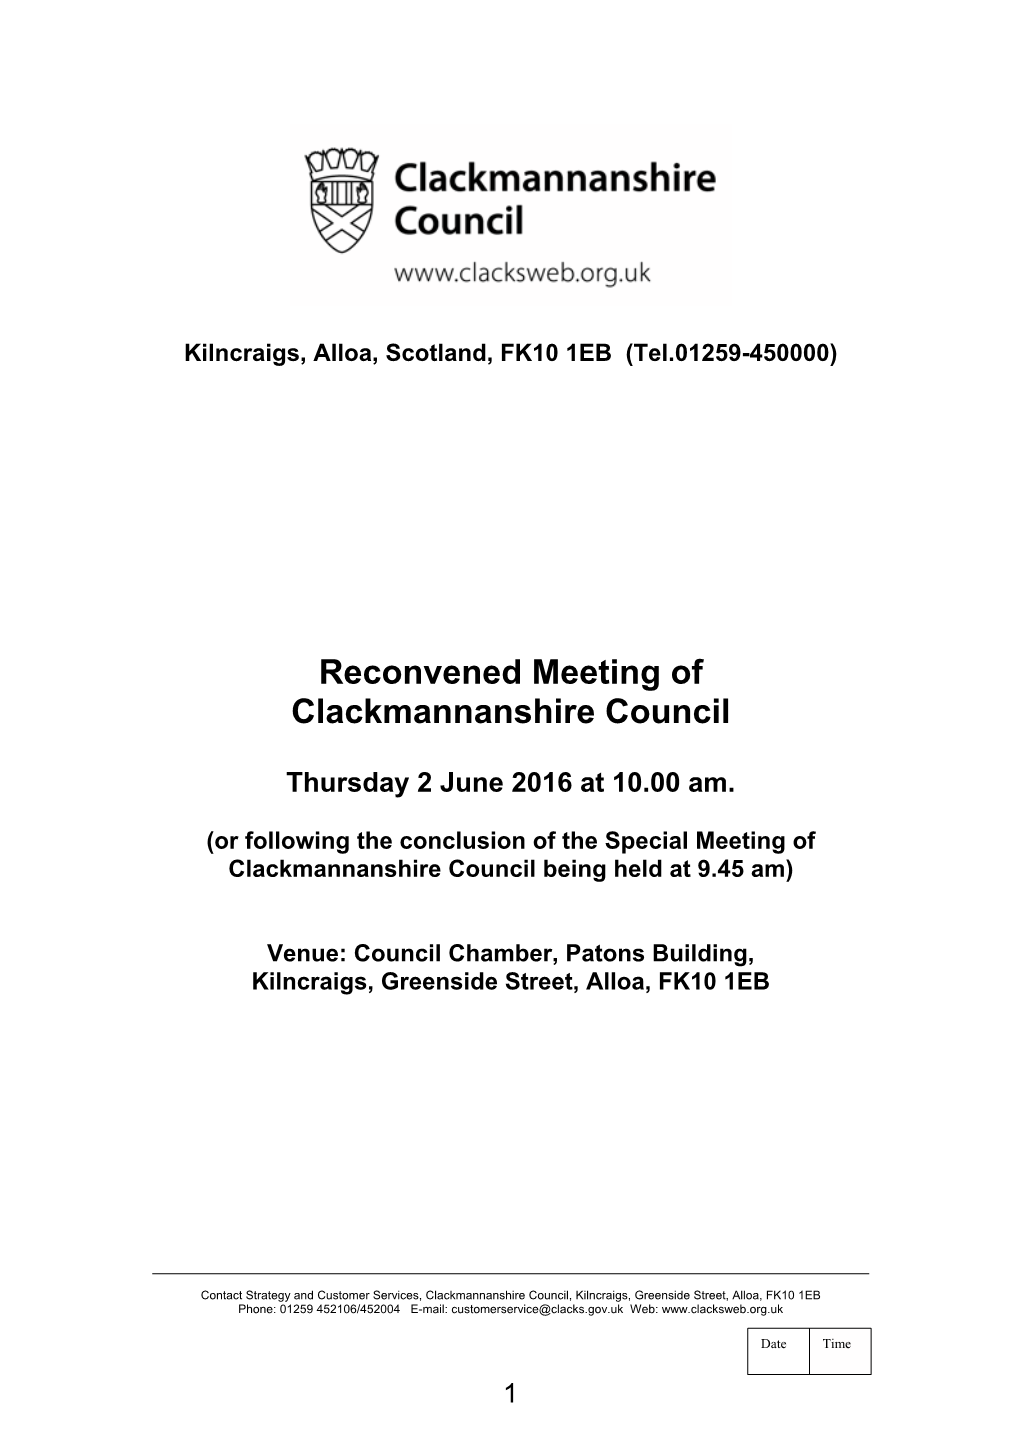 16-06-02 Clackmannanshire Council Agenda